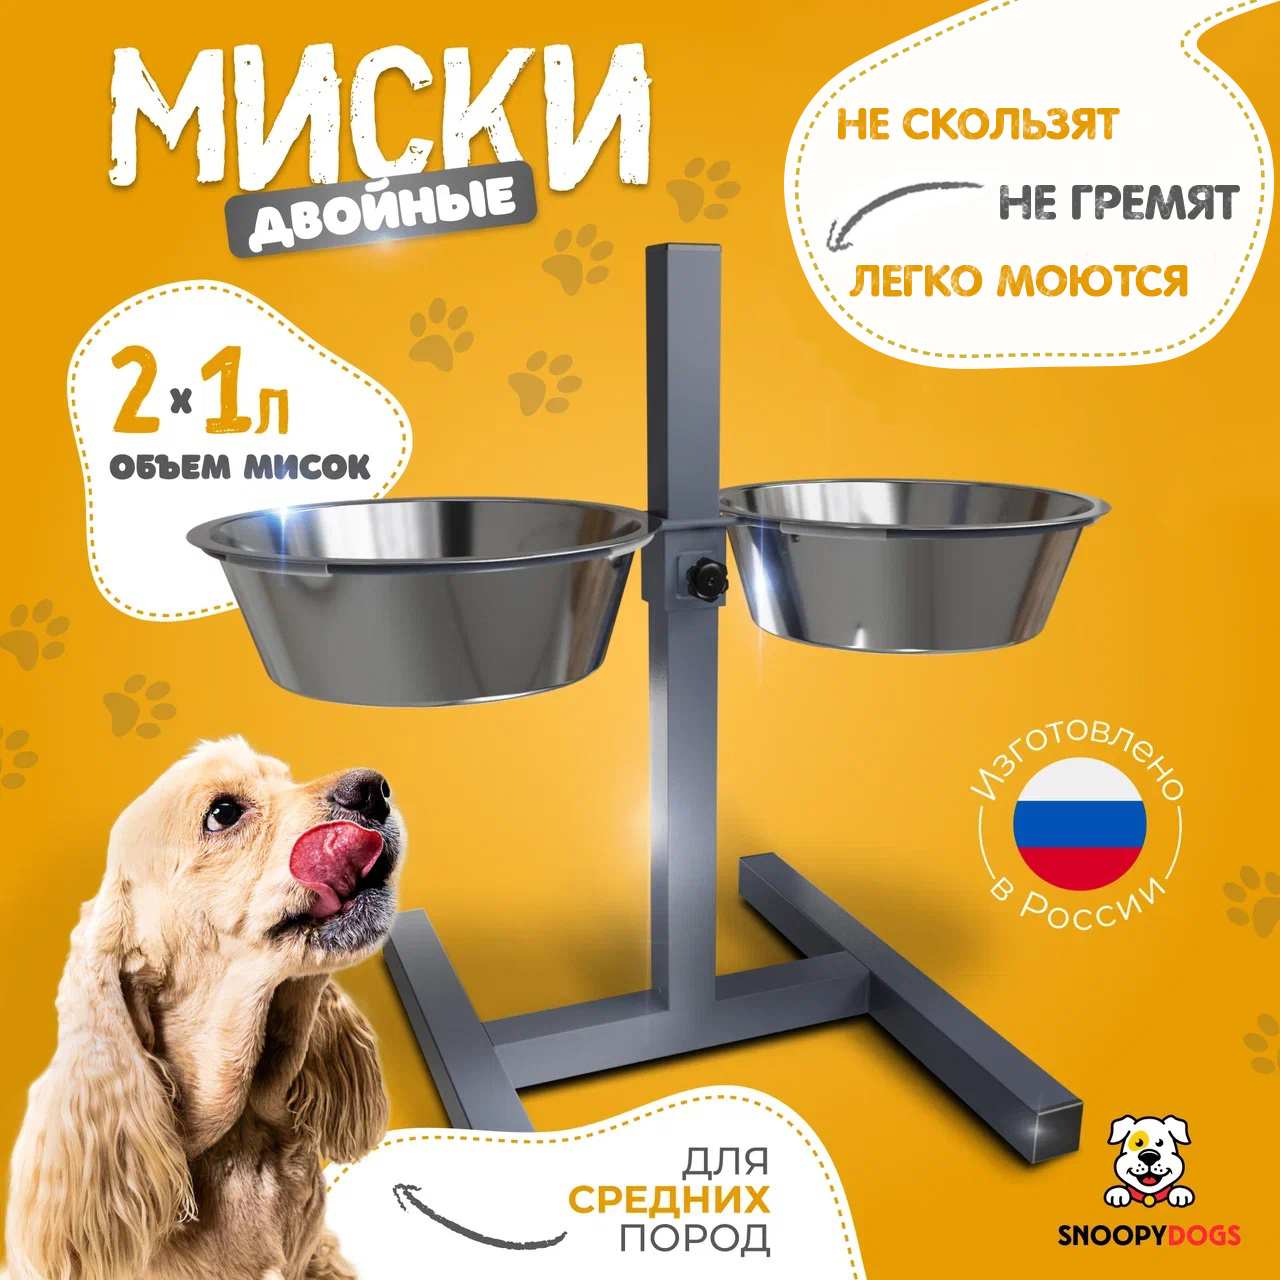 

Миски для собак Snoopy Dogs на подставке, двойные, серые, нержавеющая сталь, 2 шт по 1 л, Серый, Миски для собак на подставке